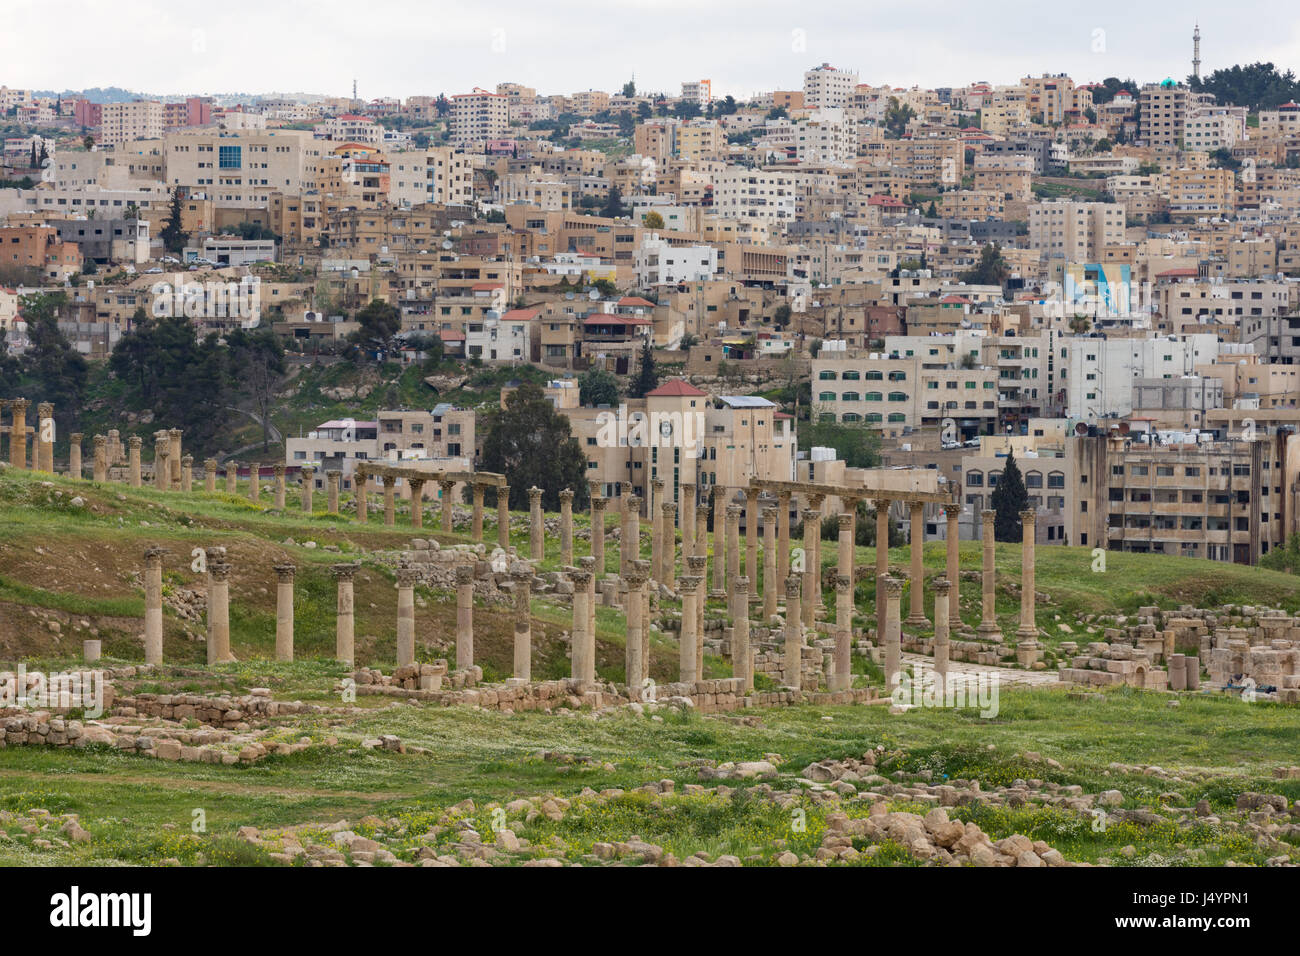 Colonnes et chapiteaux en pierre de la rue à colonnade dans l'ancienne cité romaine de Jerash, ville de commerce Jordanie. La ville moderne s'est vu dans l'arrière-plan. Banque D'Images